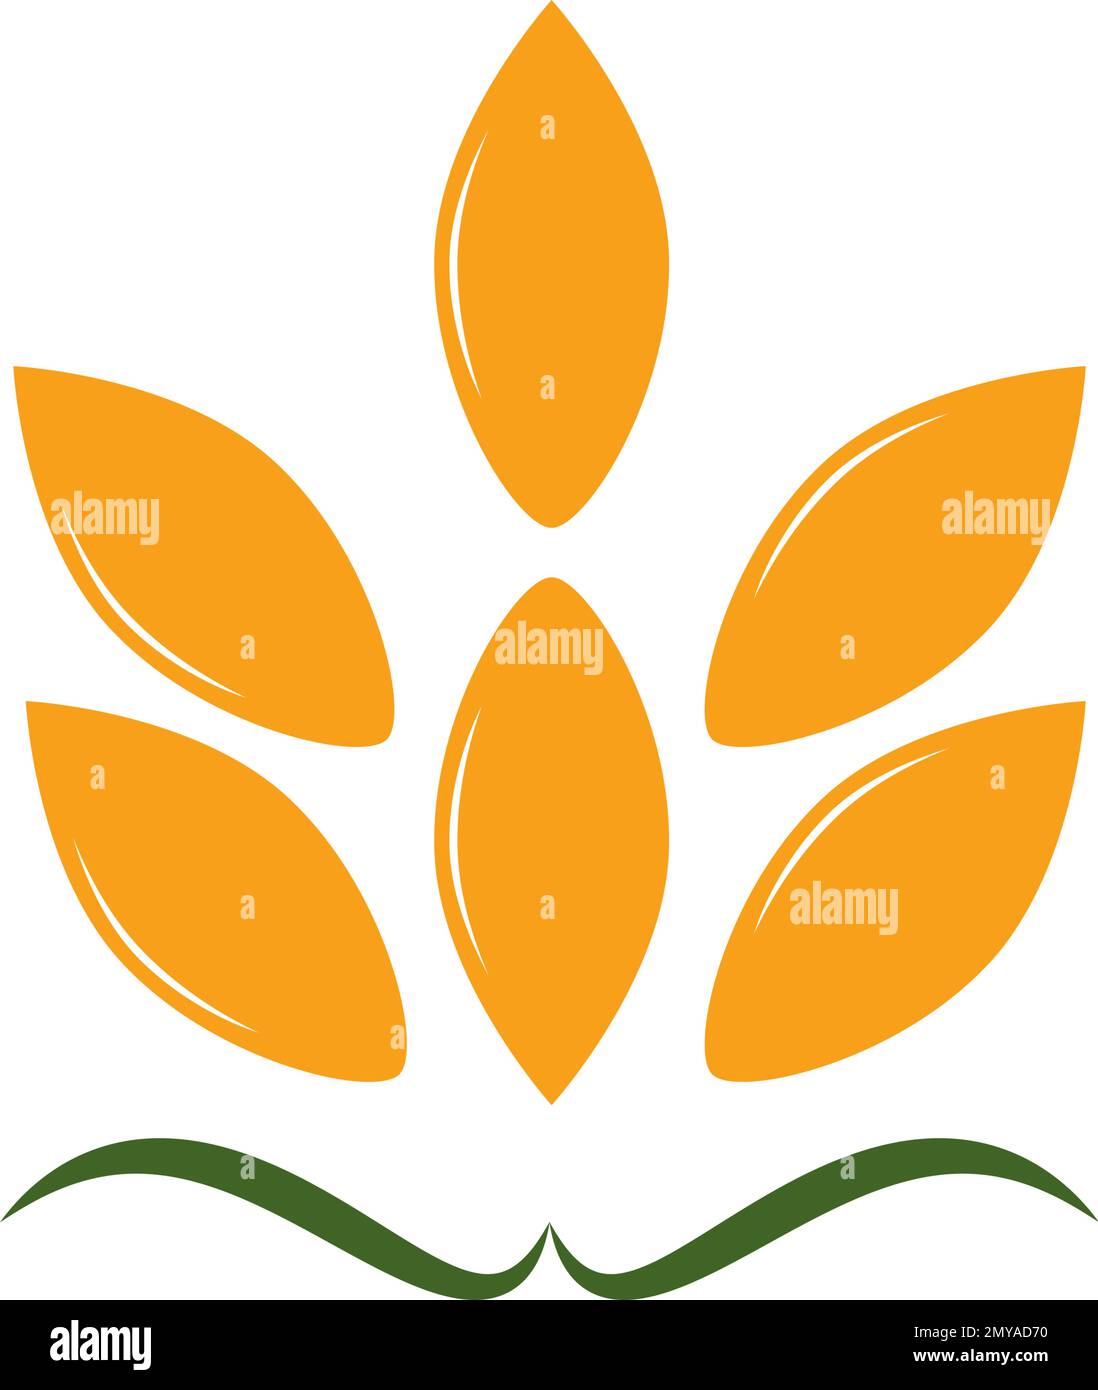 Landwirtschaftssymbol mit einem Logo mit goldenen, reifen Weizenohren, das eine Grundausstattung für Futtergetreide und Tierfutter darstellt, Vektordarstellung isoliert auf Wittling Stock Vektor